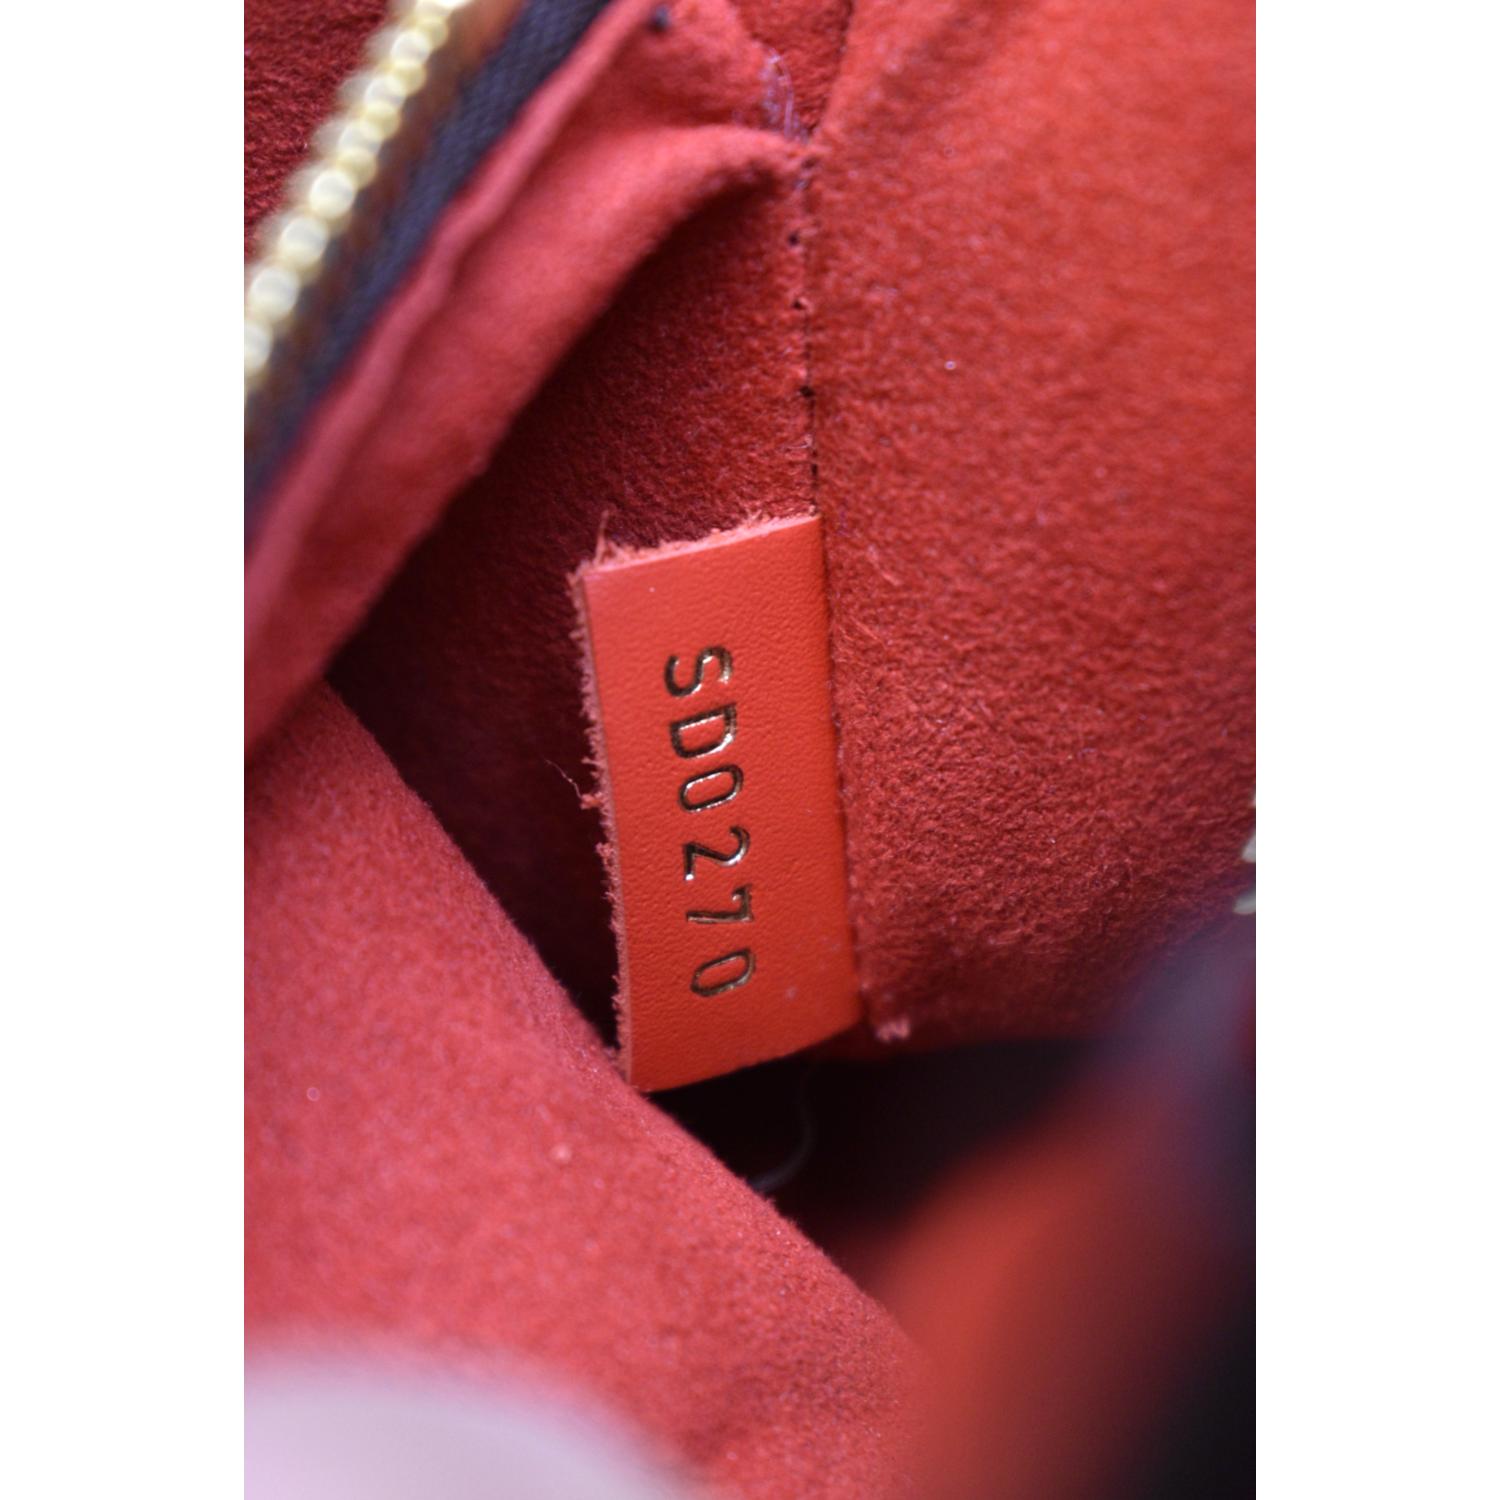 Monogram Neo Noe?  Bags, Bags designer fashion, Fashion bags